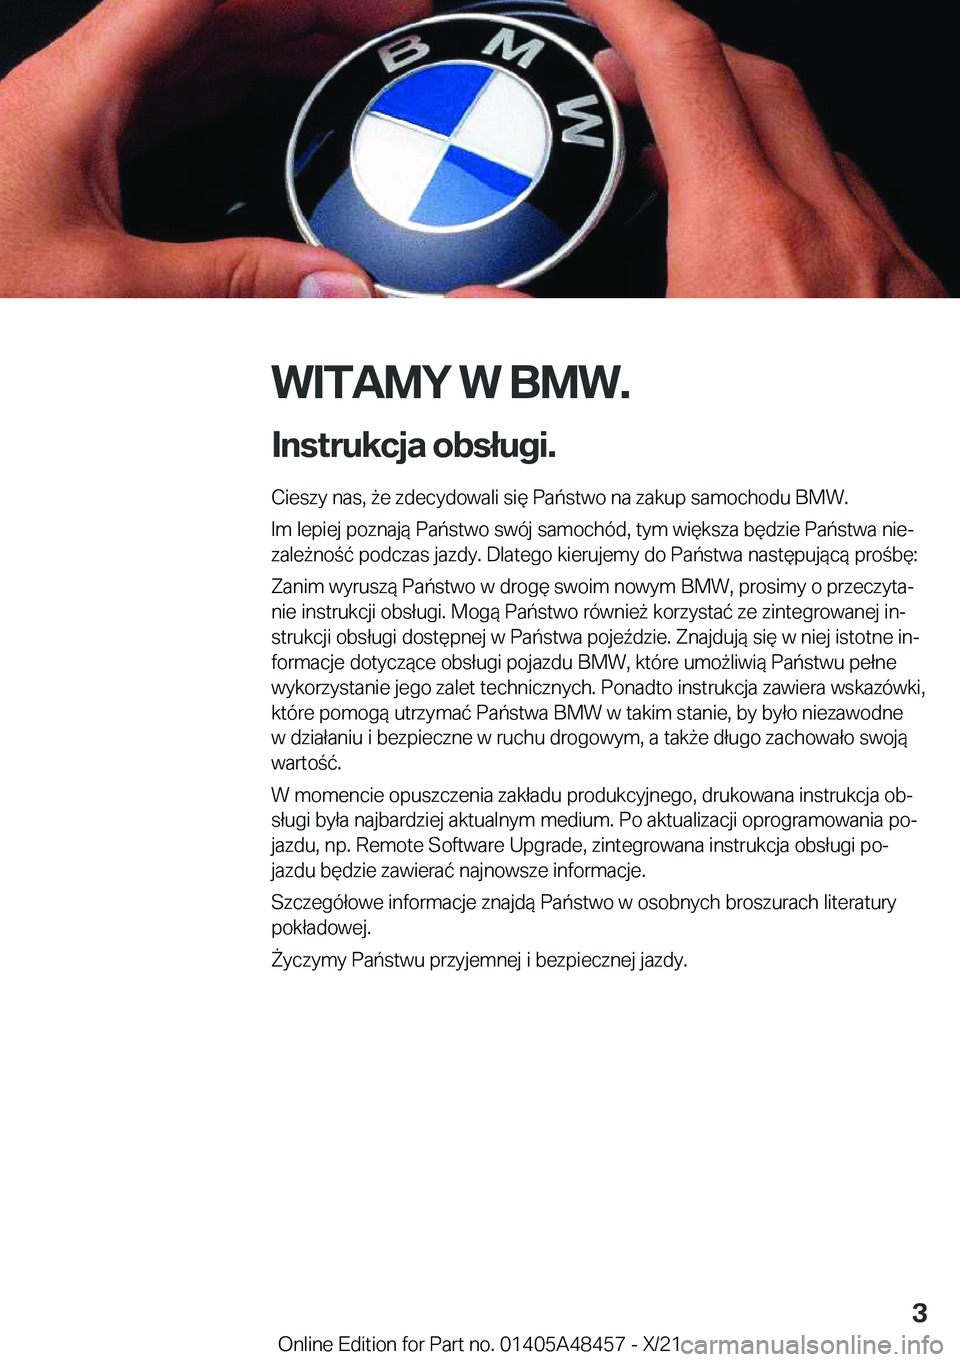 BMW X7 2022  Instrukcja obsługi (in Polish) �W�I�T�A�M�Y��W��B�M�W�.
�I�n�s�t�r�u�k�c�j�a��o�b�s�ł�u�g�i�. �C�i�e�s�z�y��n�a�s�,�9�e��z�d�e�c�y�d�o�w�a�l�i��s�i�